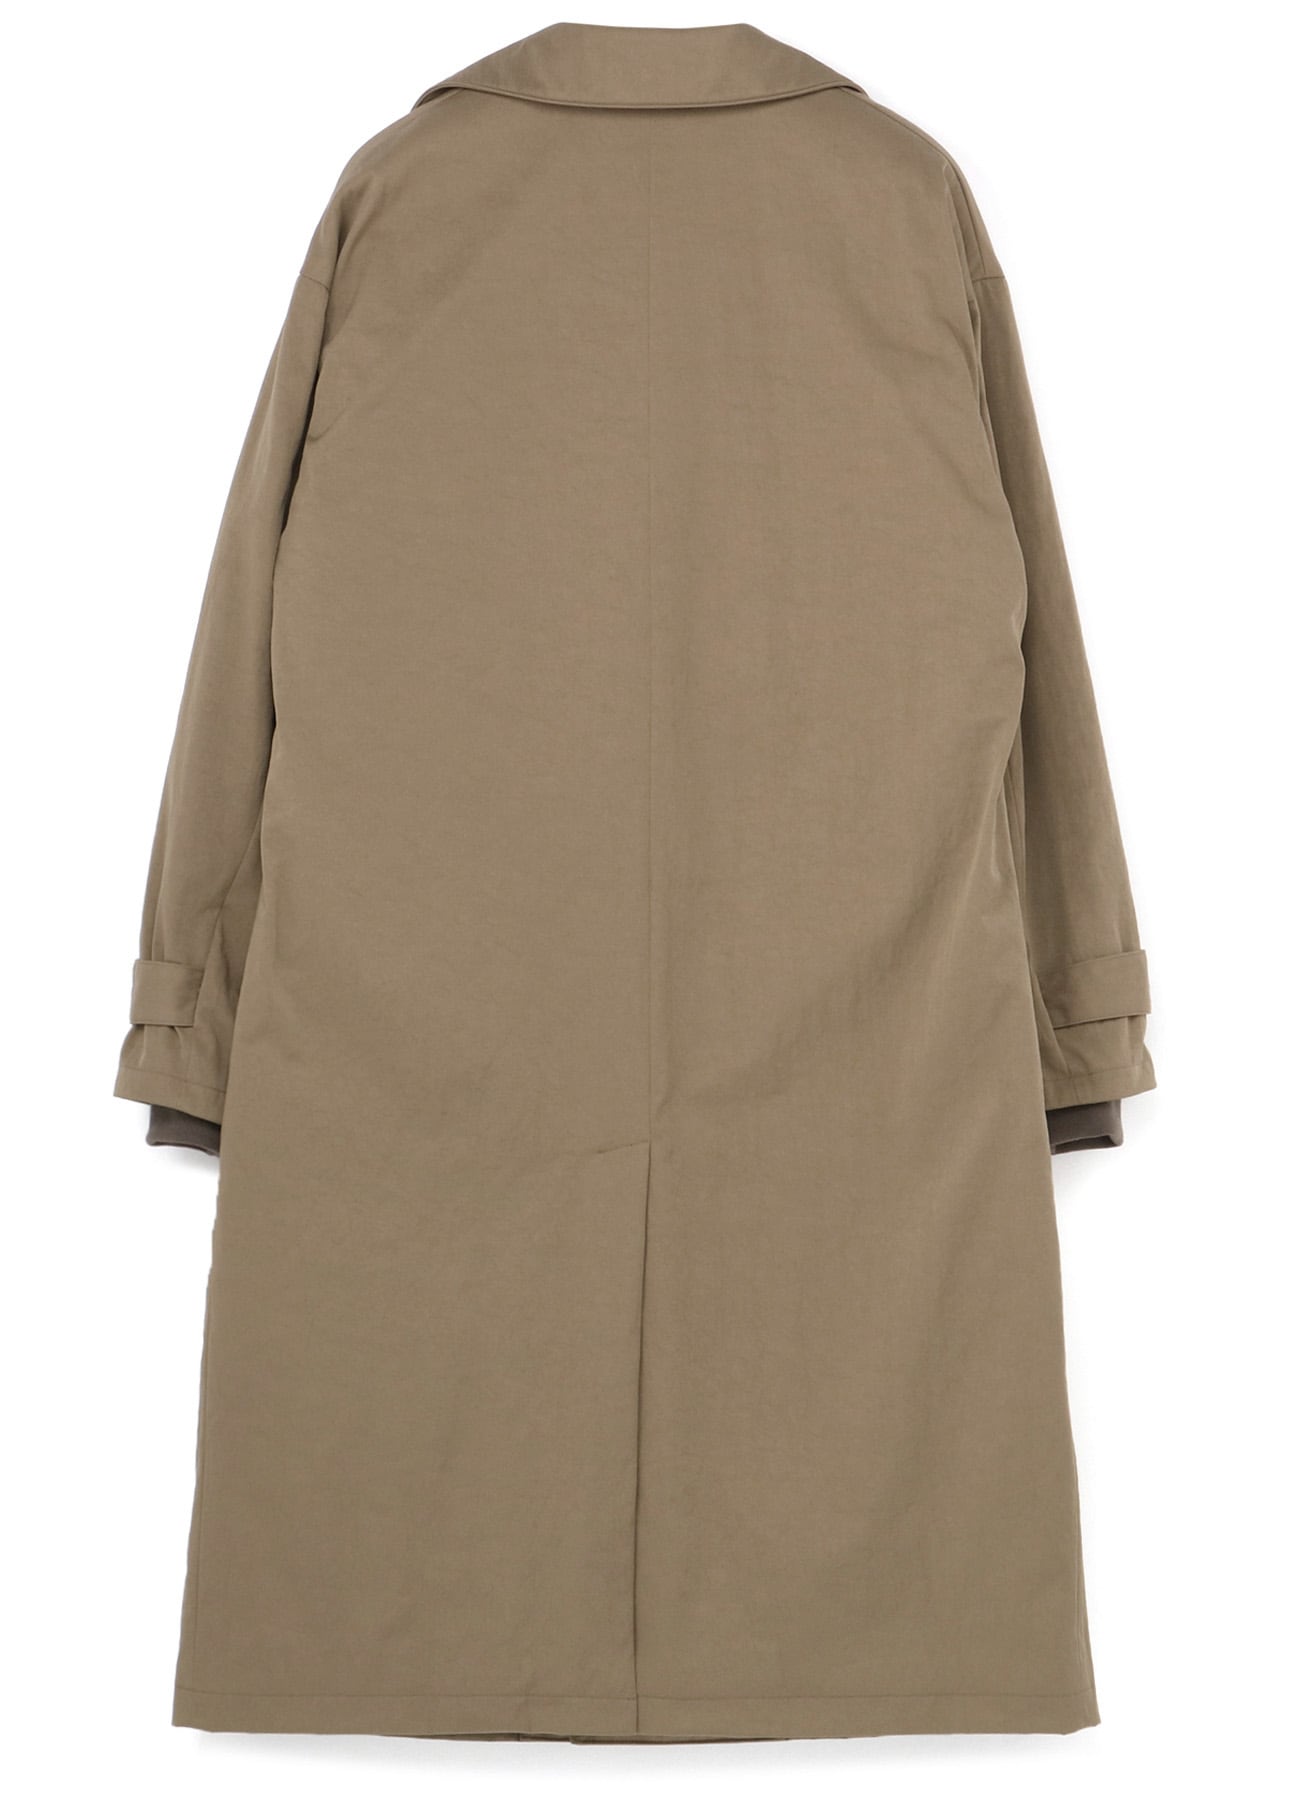 NYLON CHINO CLOTH LONG COAT